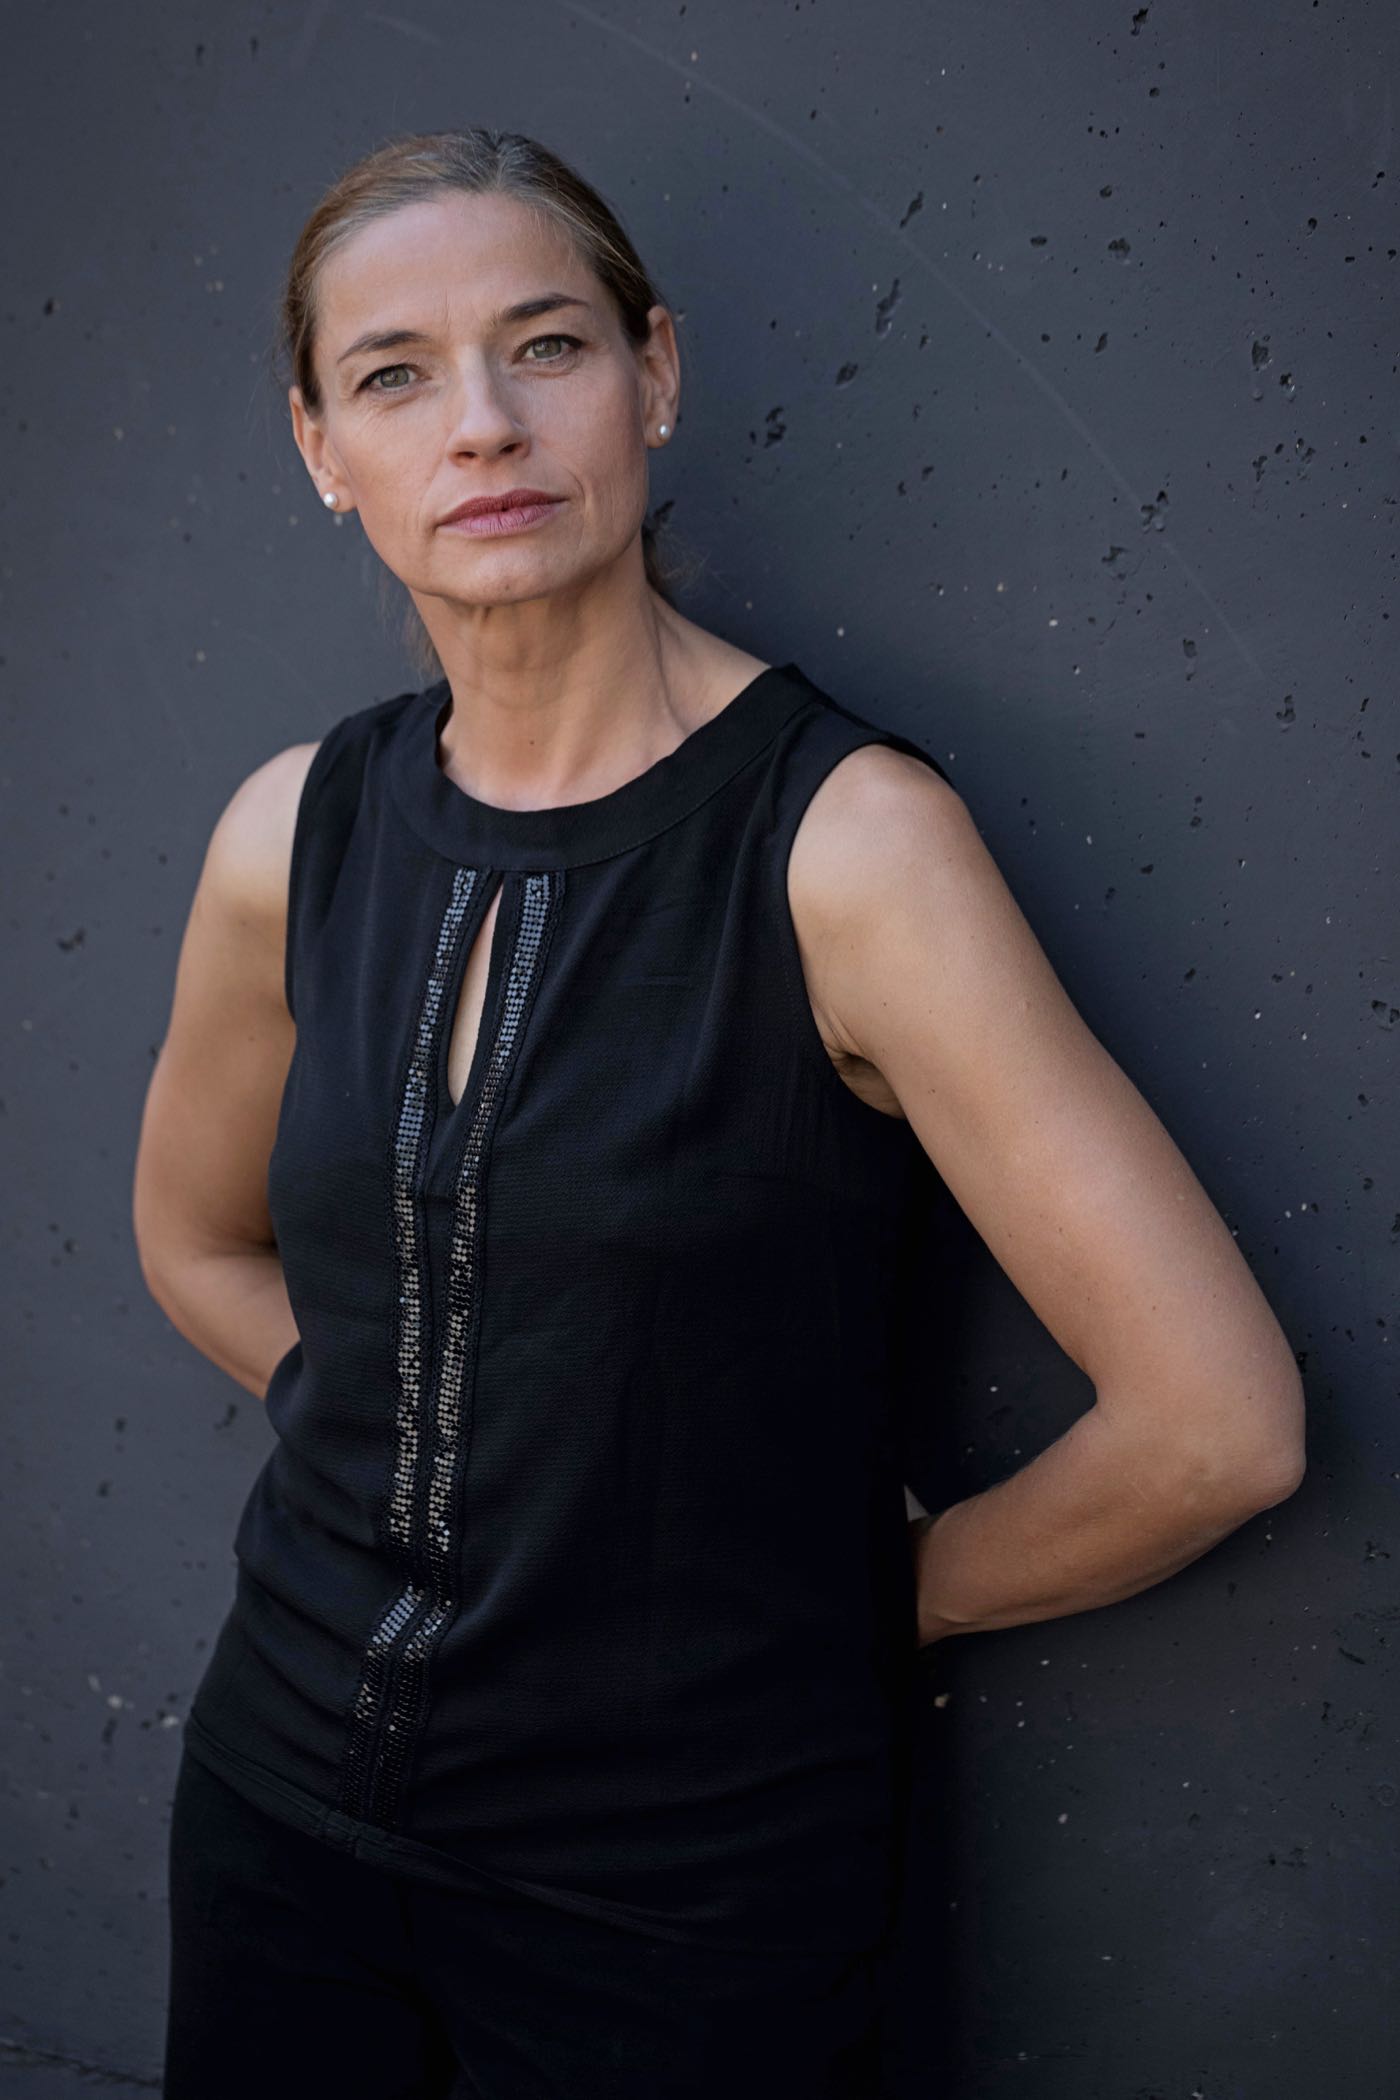 Ute Wieckhorst, Schauspielerin (Foto: Matthias Eckert, 2018)